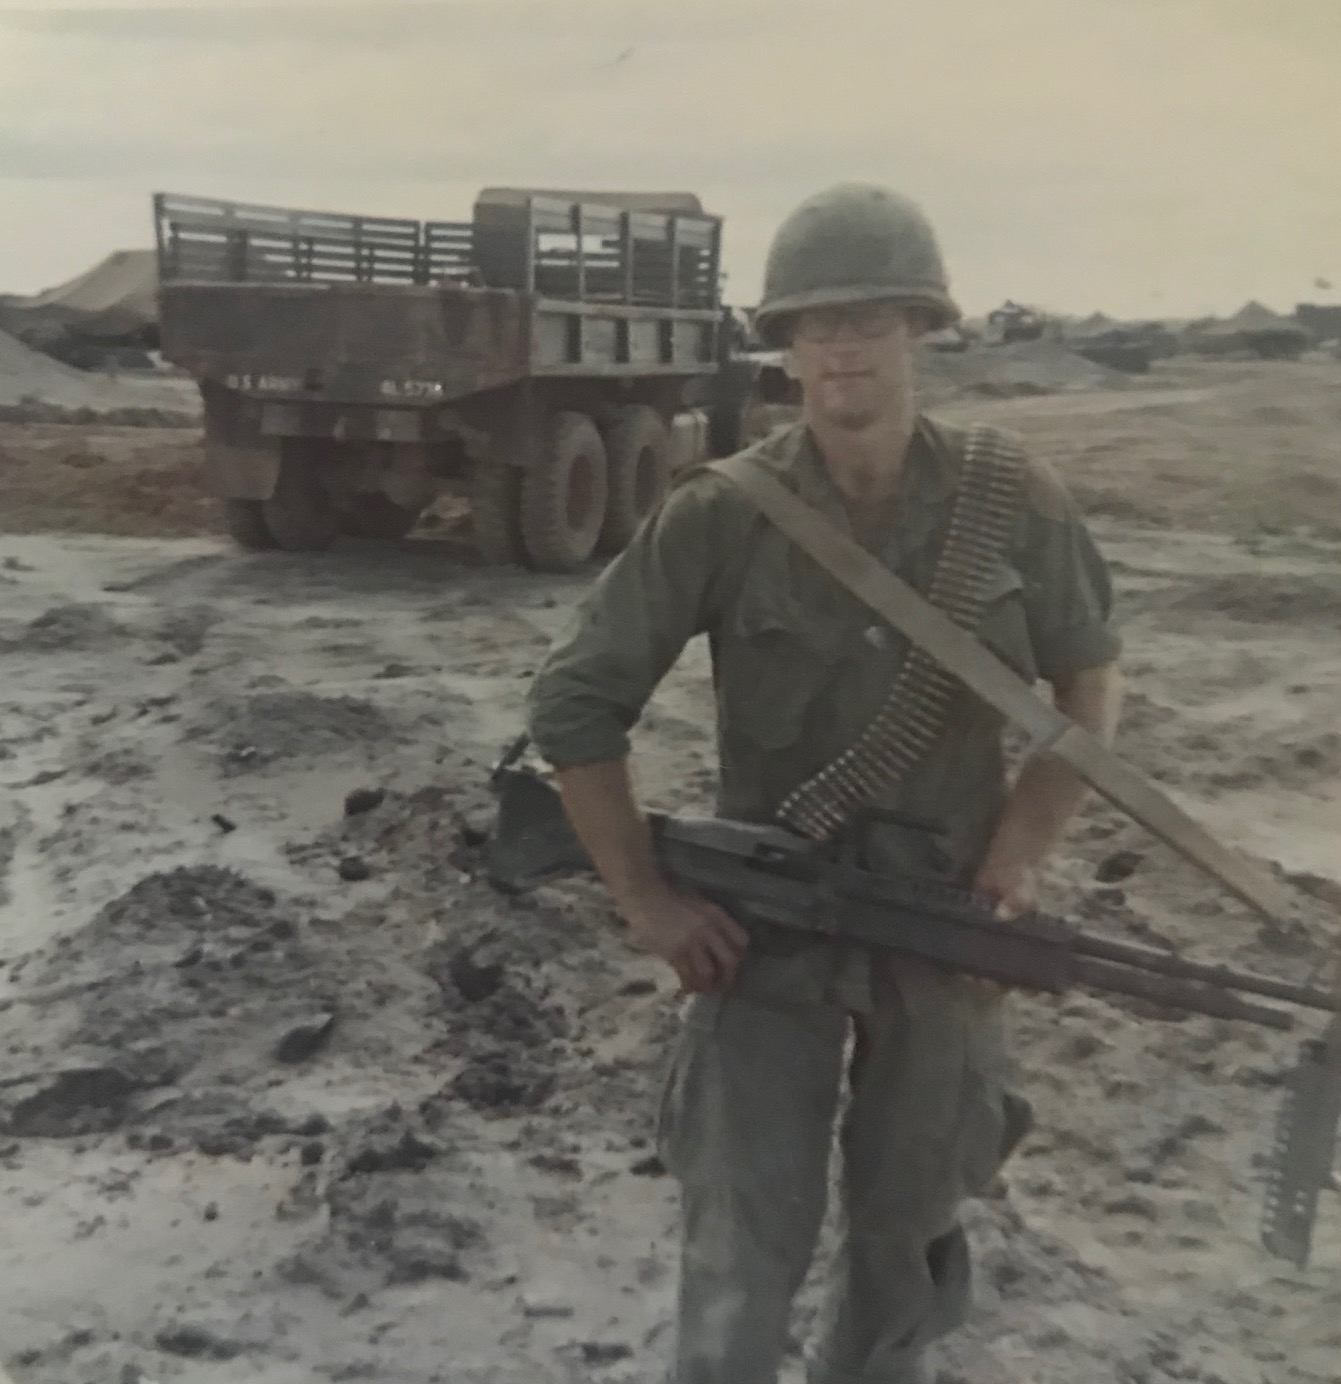 Dave Himmer in Vietnam with an M60 machine gun